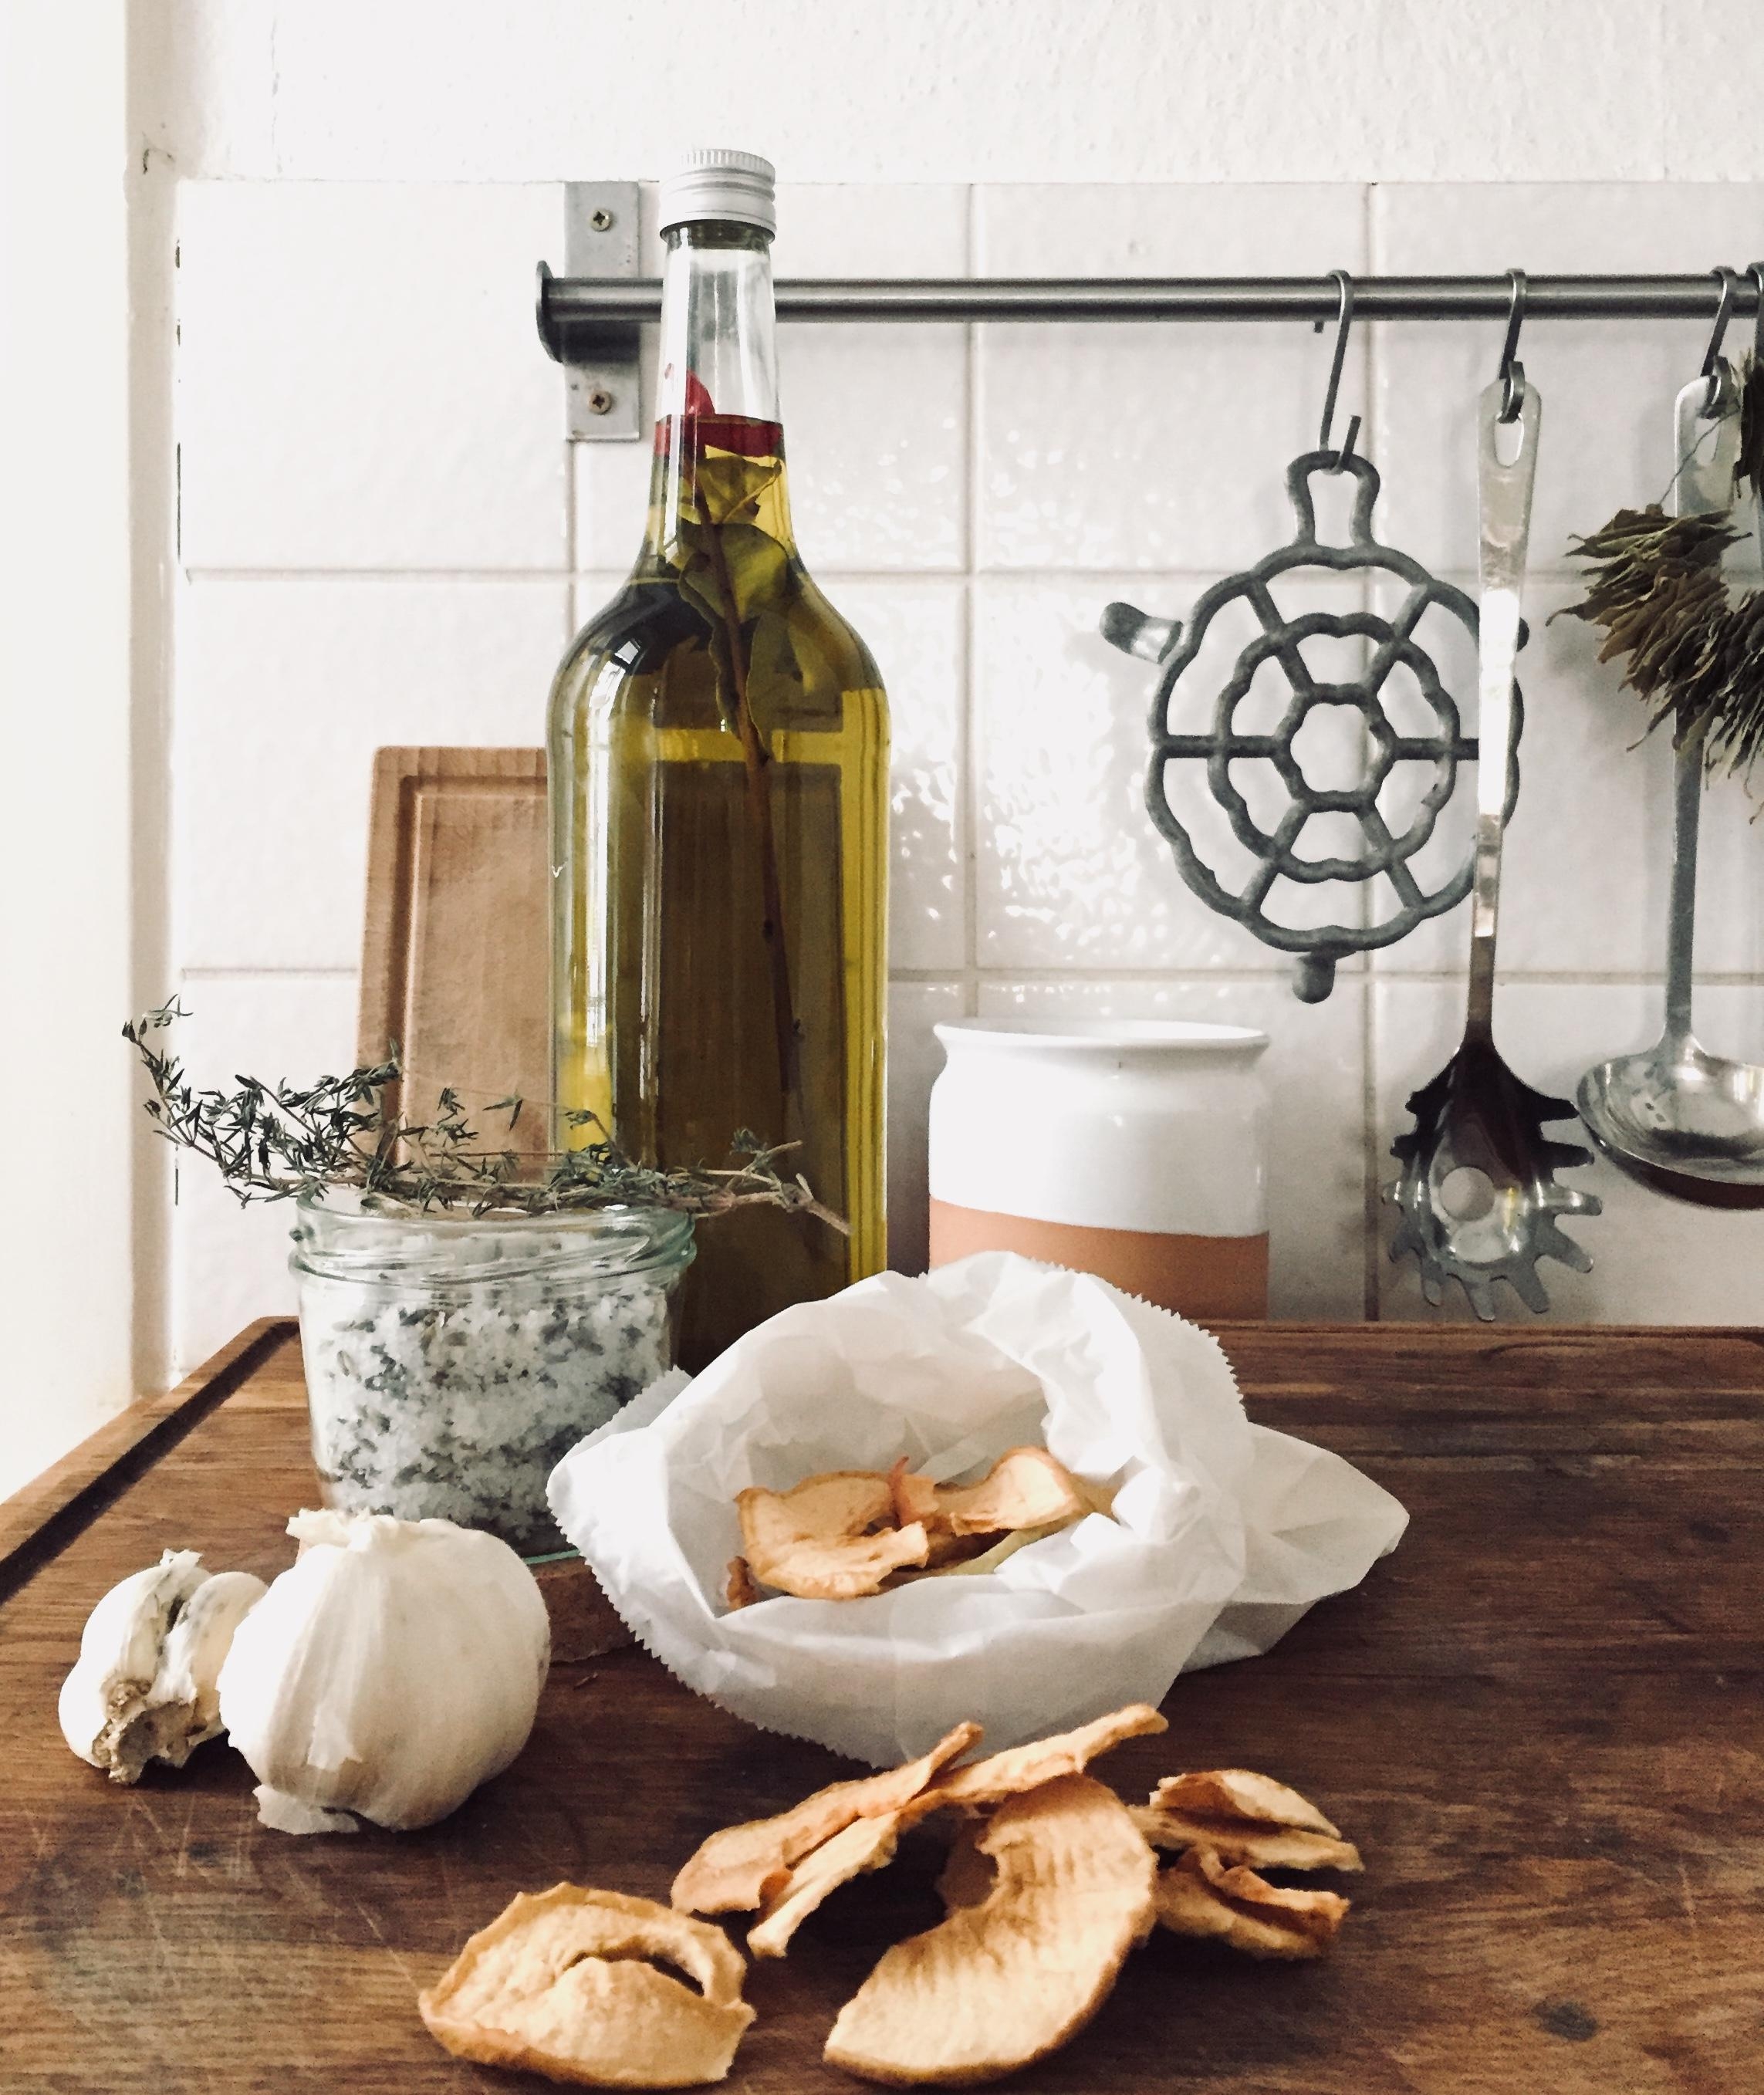 #diyweek #diygeschenkidee Gruß aus der Küche geht immer, oder? Olivenöl mit Gewürzen, Apfelchips(eigenerApfel), Meersalz